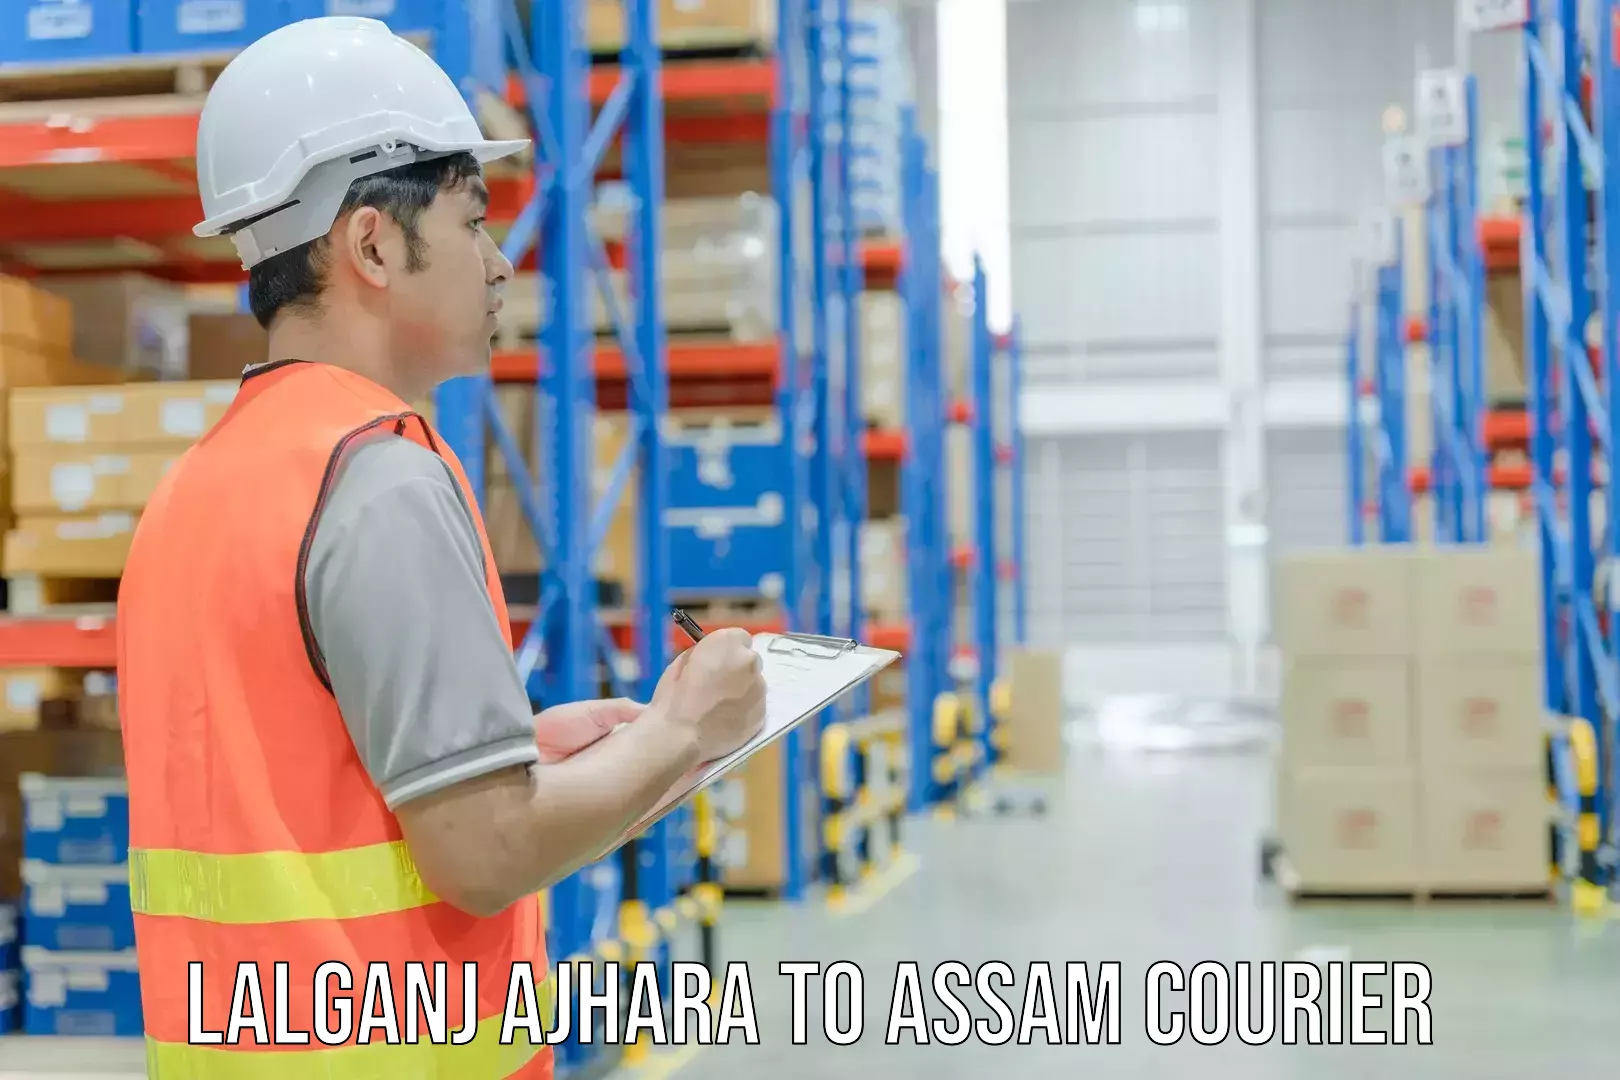 Efficient order fulfillment Lalganj Ajhara to Assam